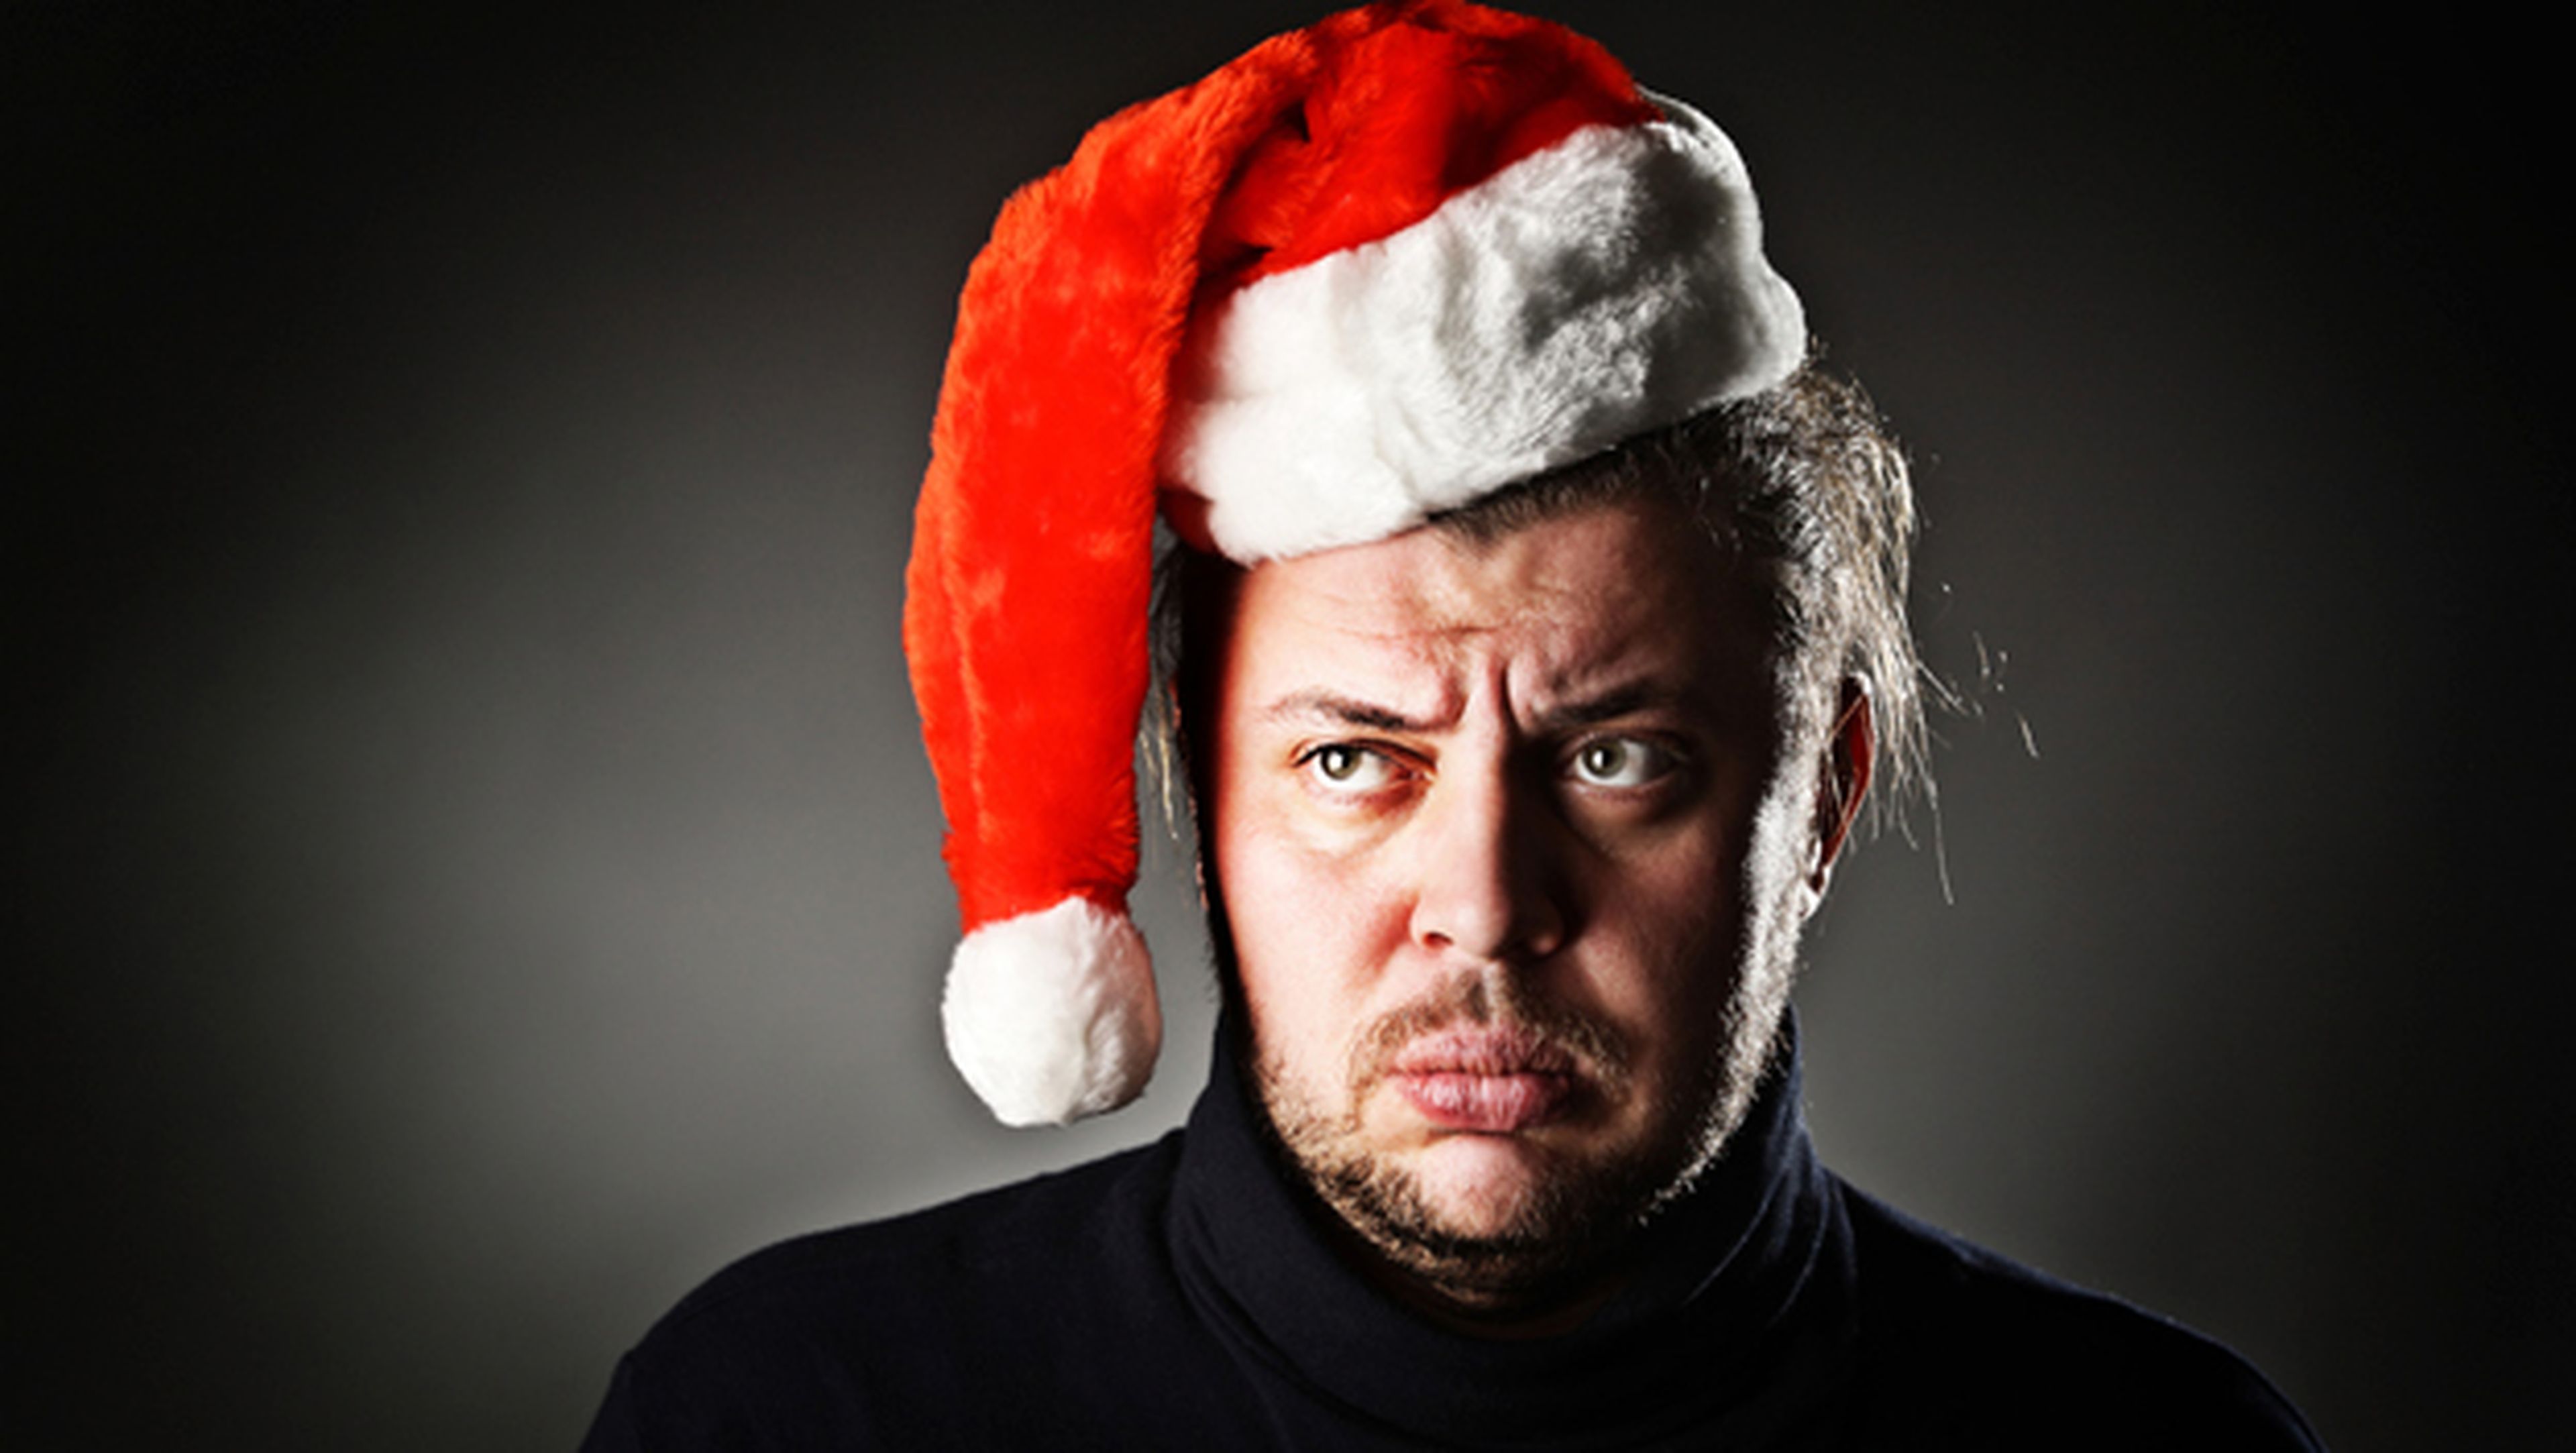 La música navideña no es buena para la salud